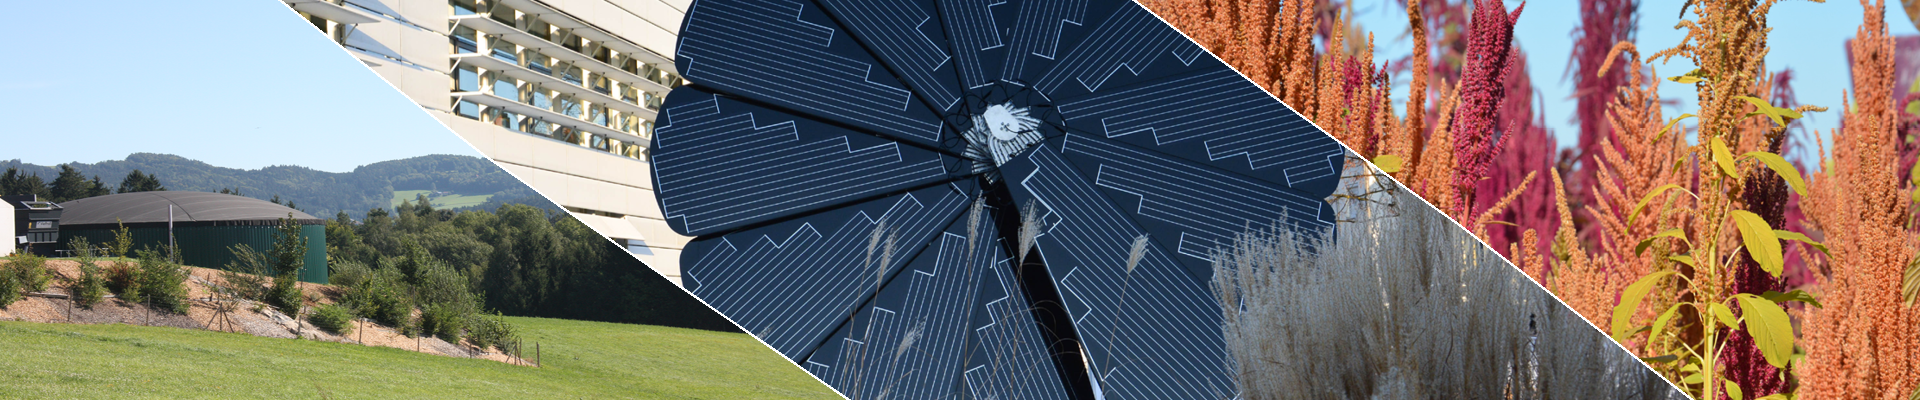 Webinar: Bestehende Photovoltaikanlagen bewahren – Was kann man tun nach Ablauf der Einspeisevergütung?